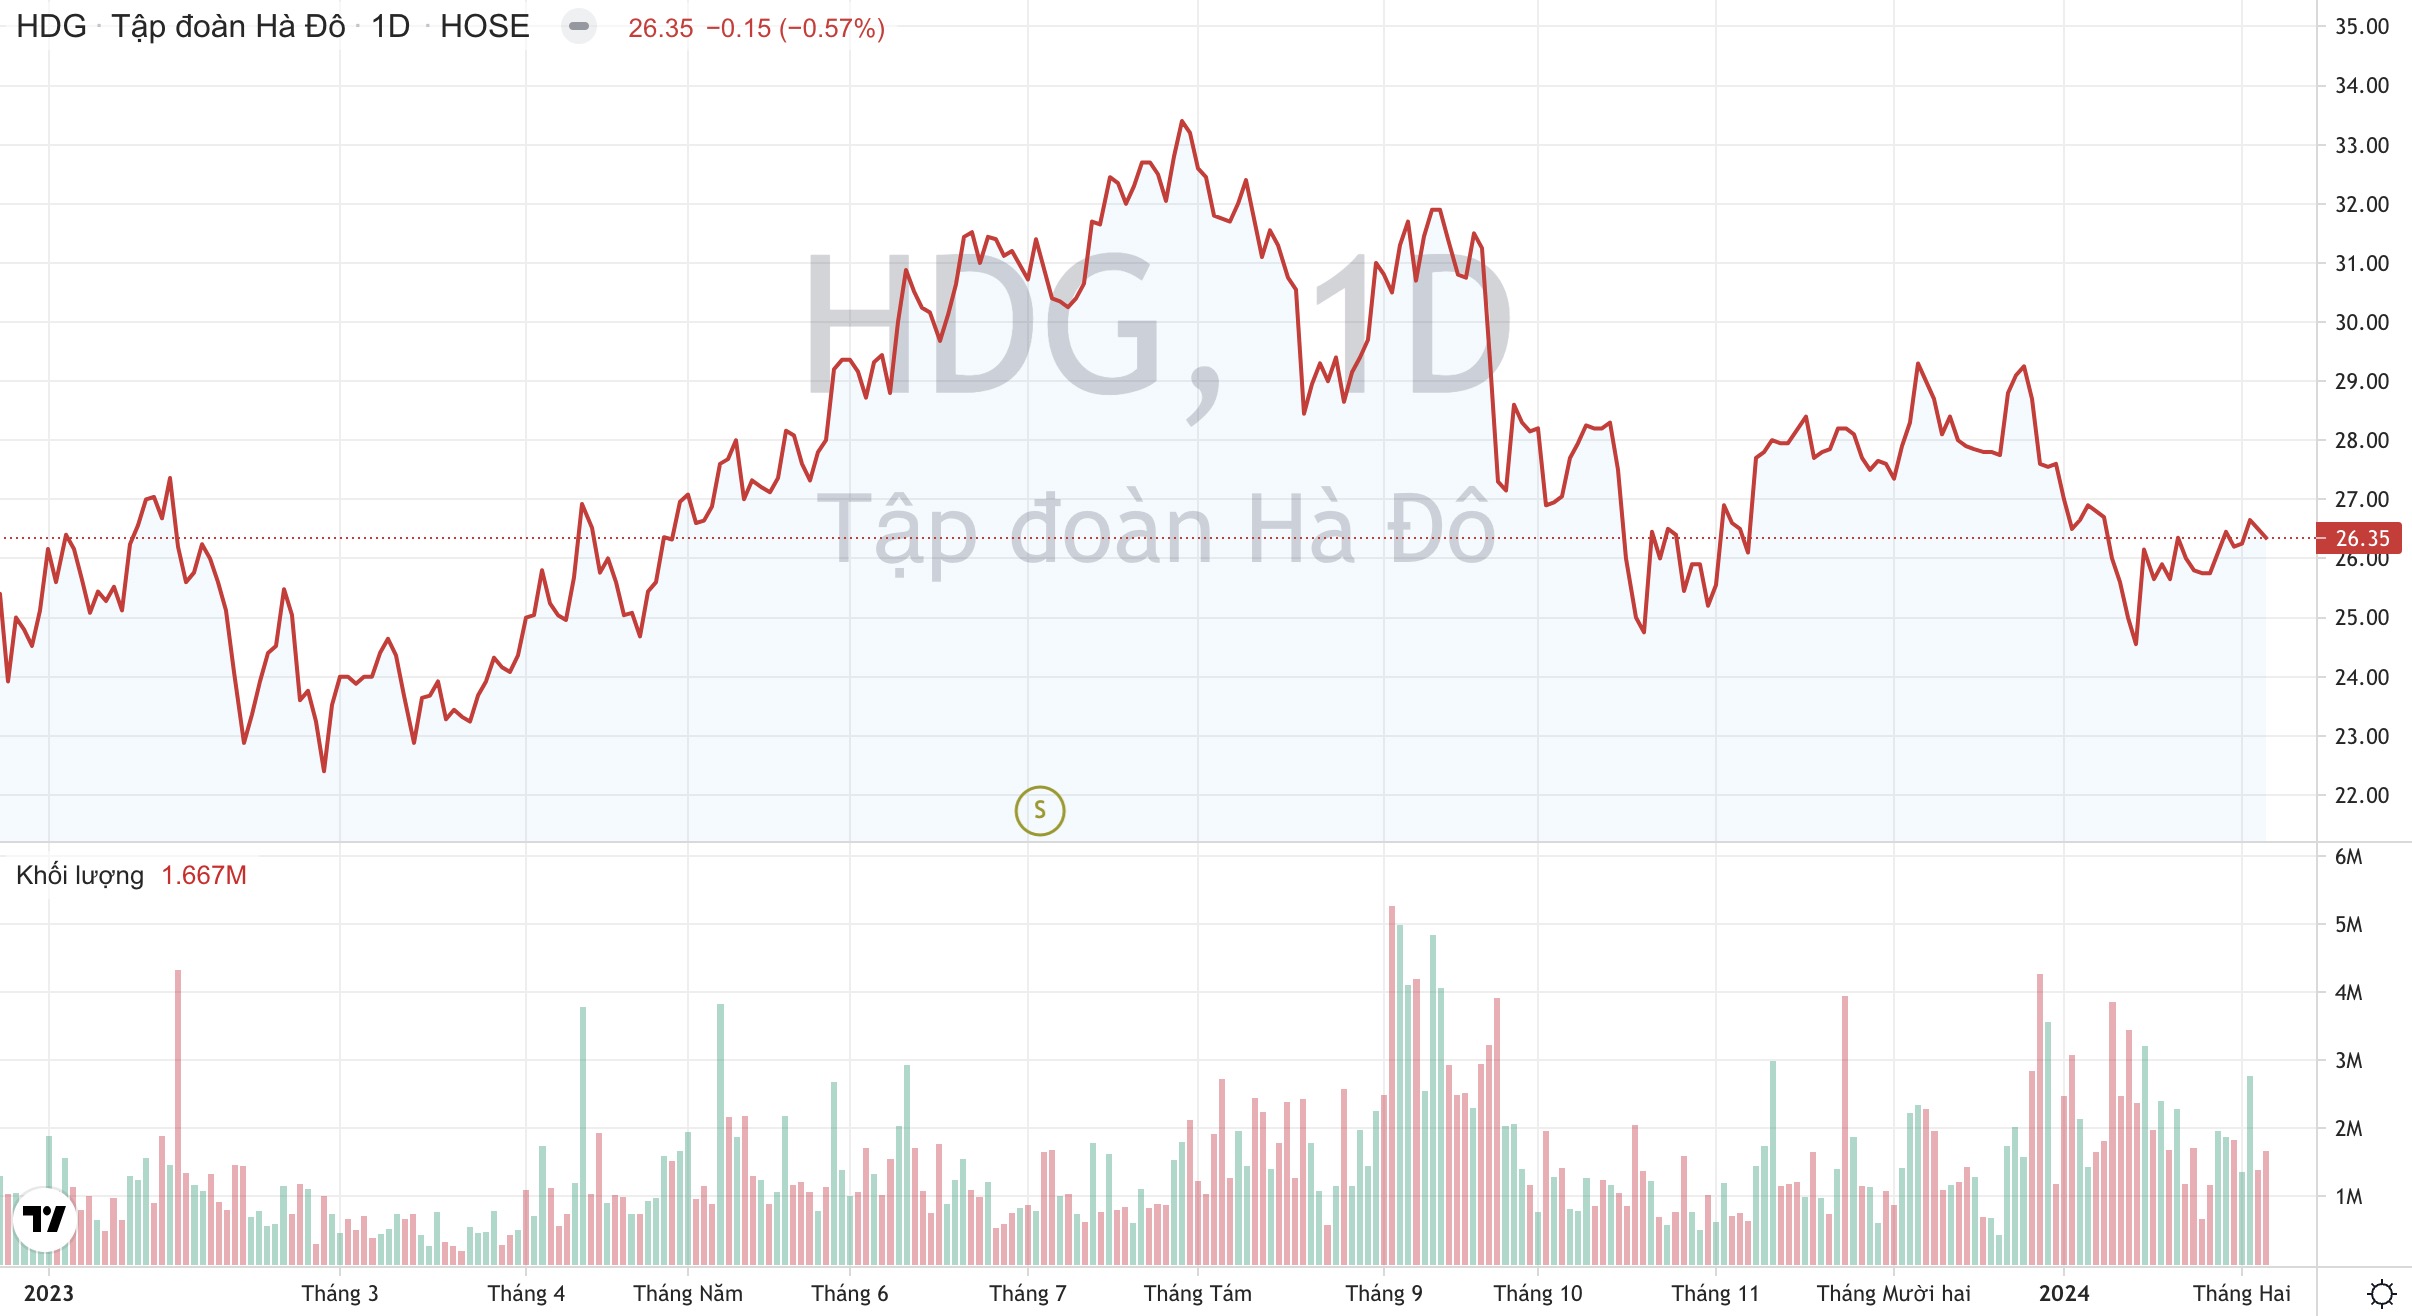 Giá cổ phiếu HDG Tập đoàn Hà Đô